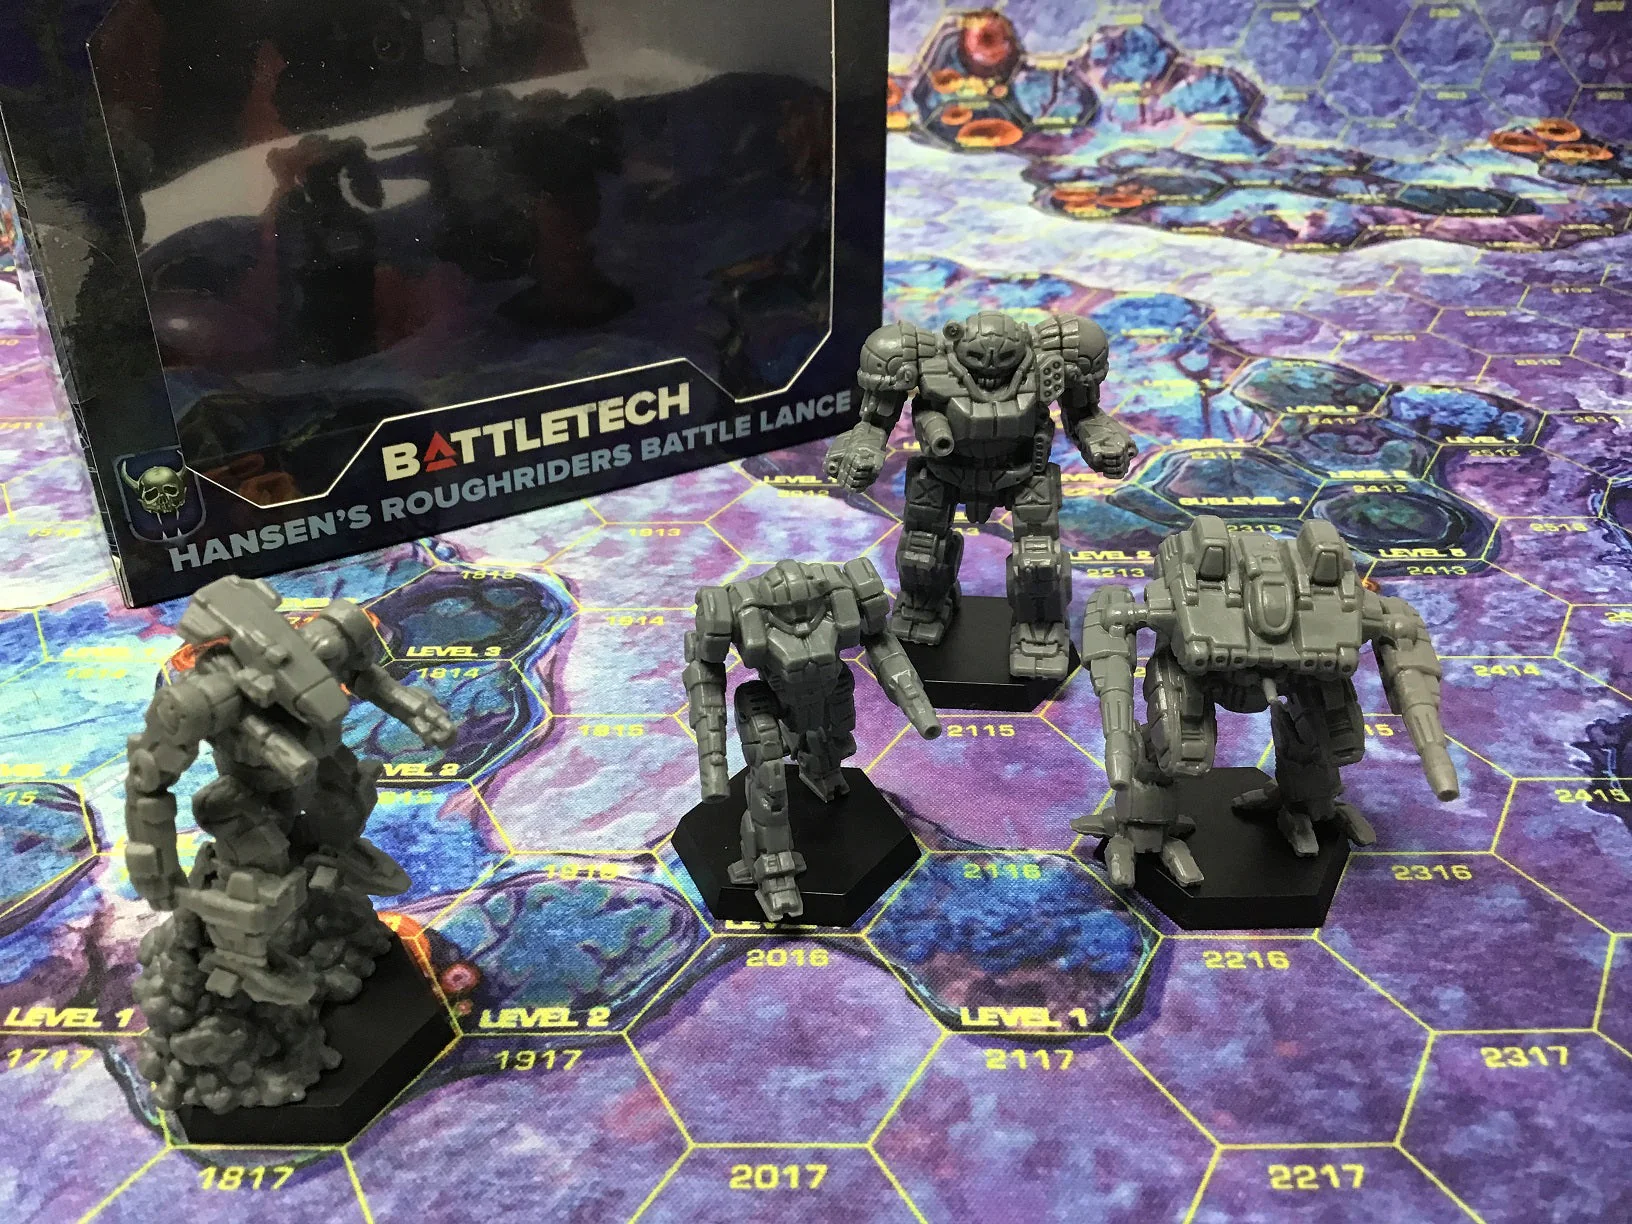 Battletech: Miniature Force Pack - Hansens Roughriders Battle Lance